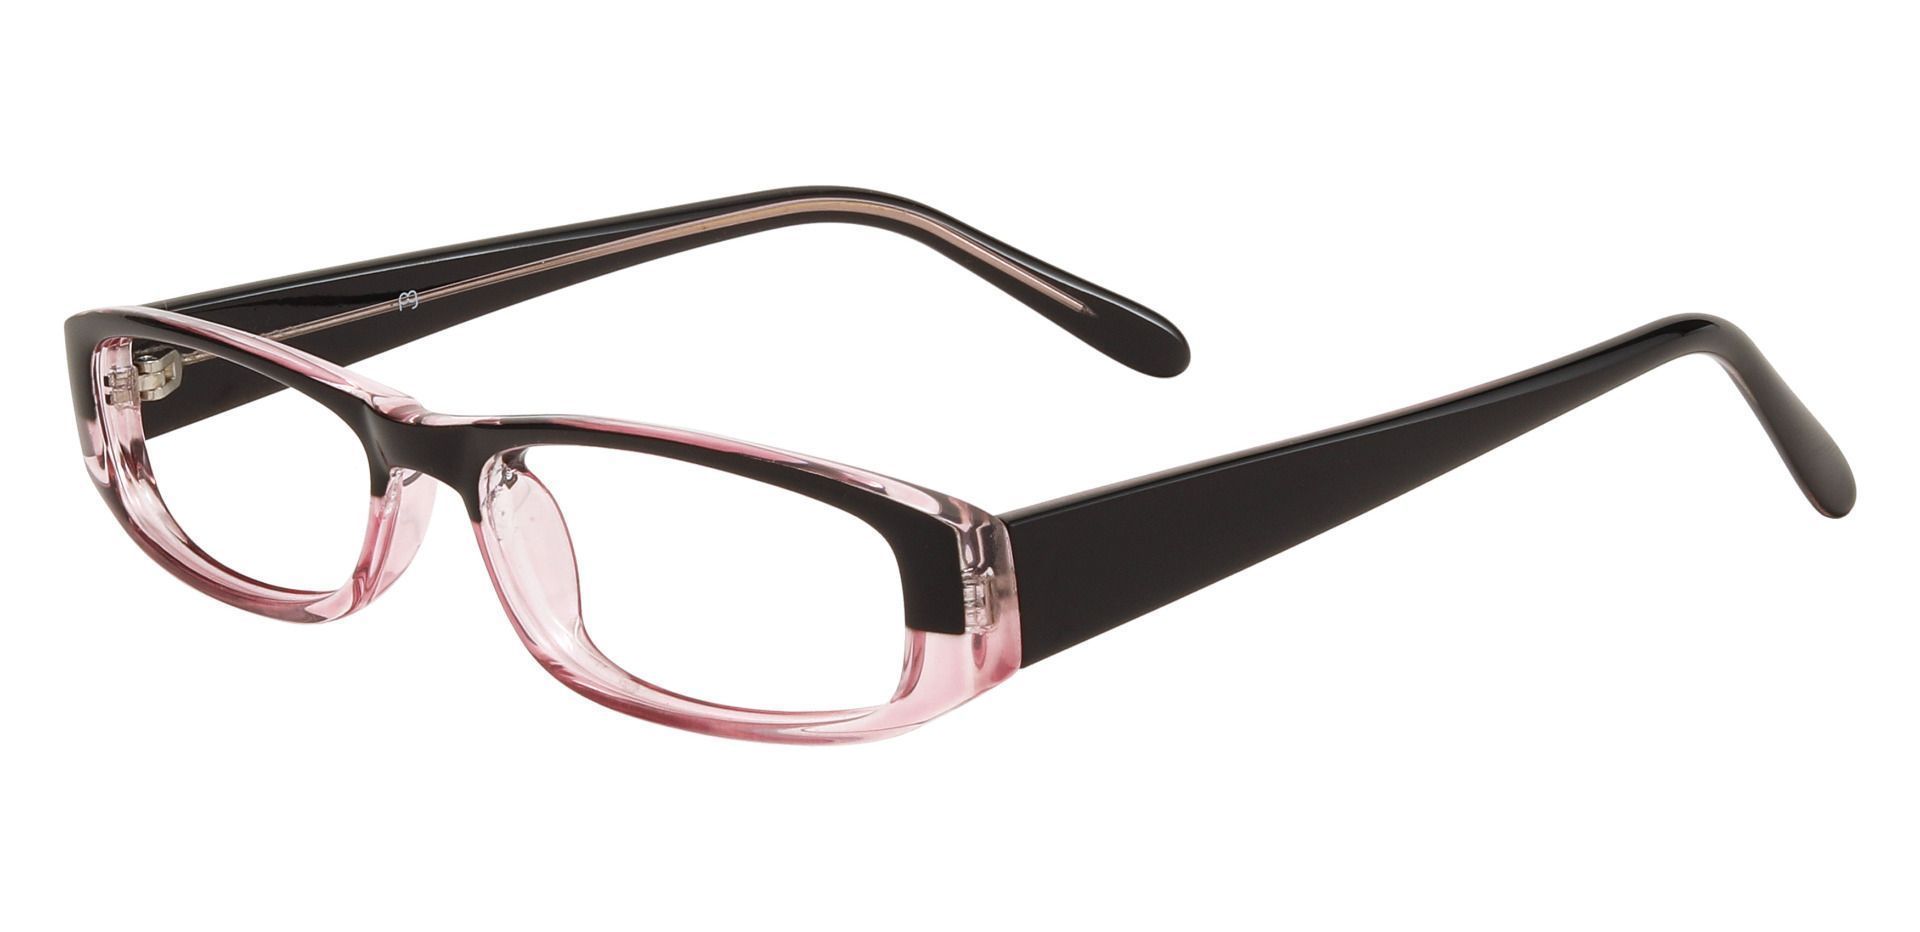 Elgin Rectangle Eyeglasses Frame - Pink